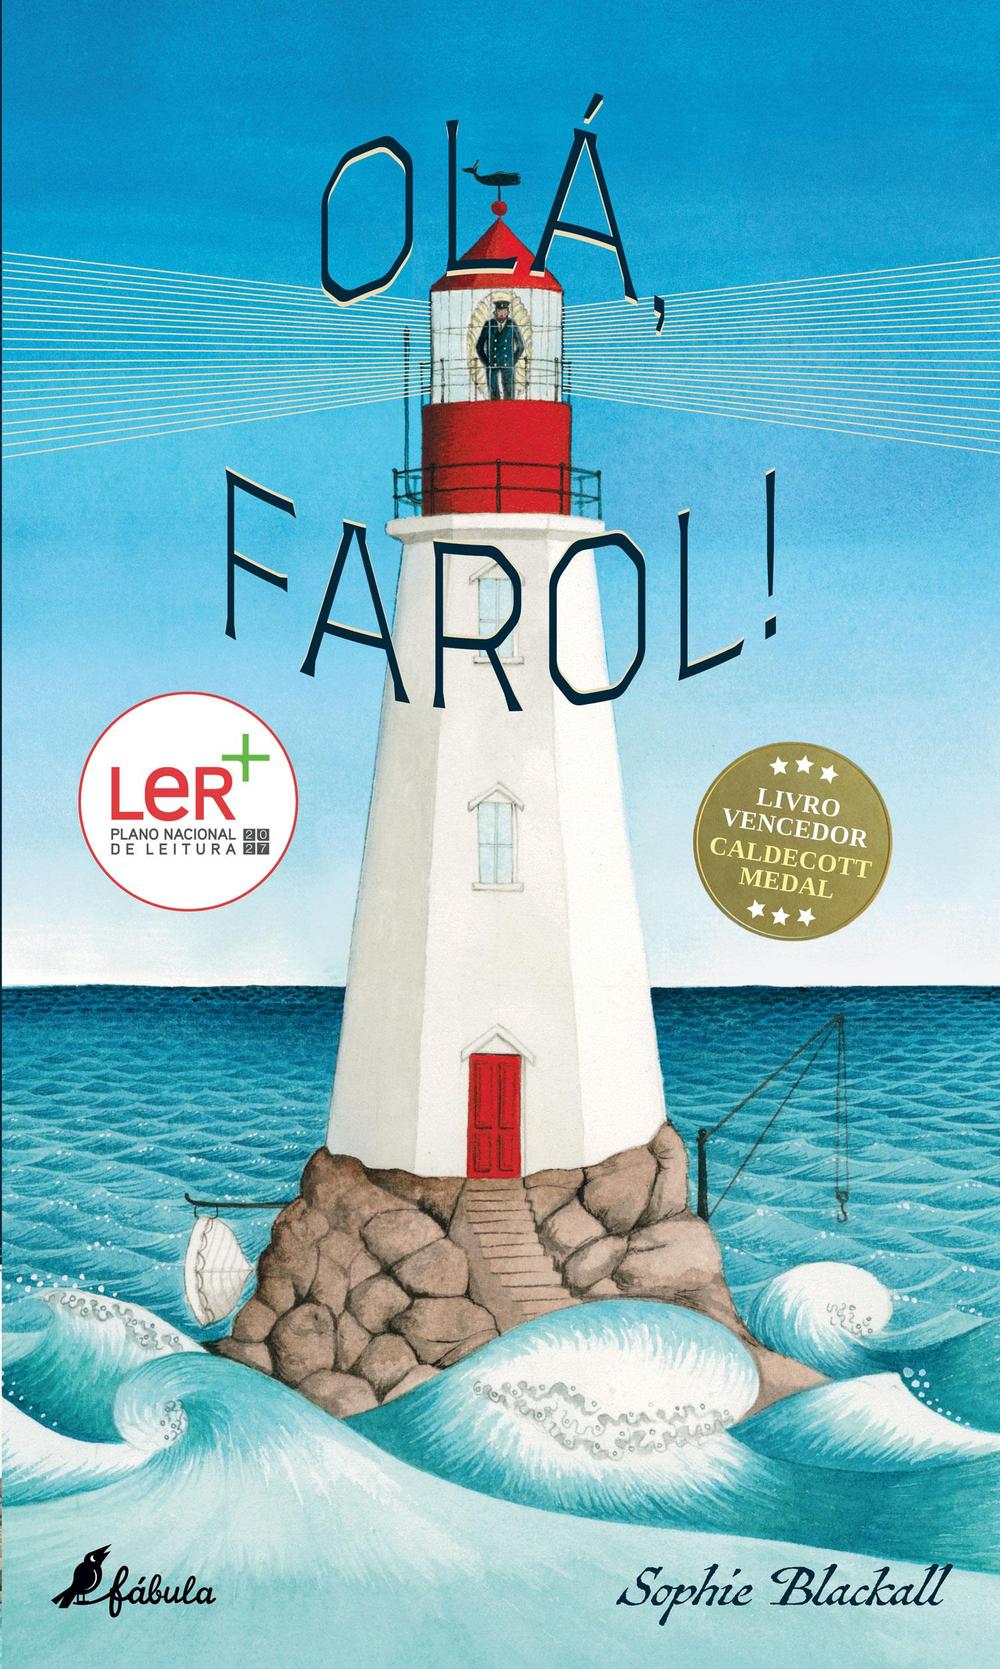 Olá, Farol!